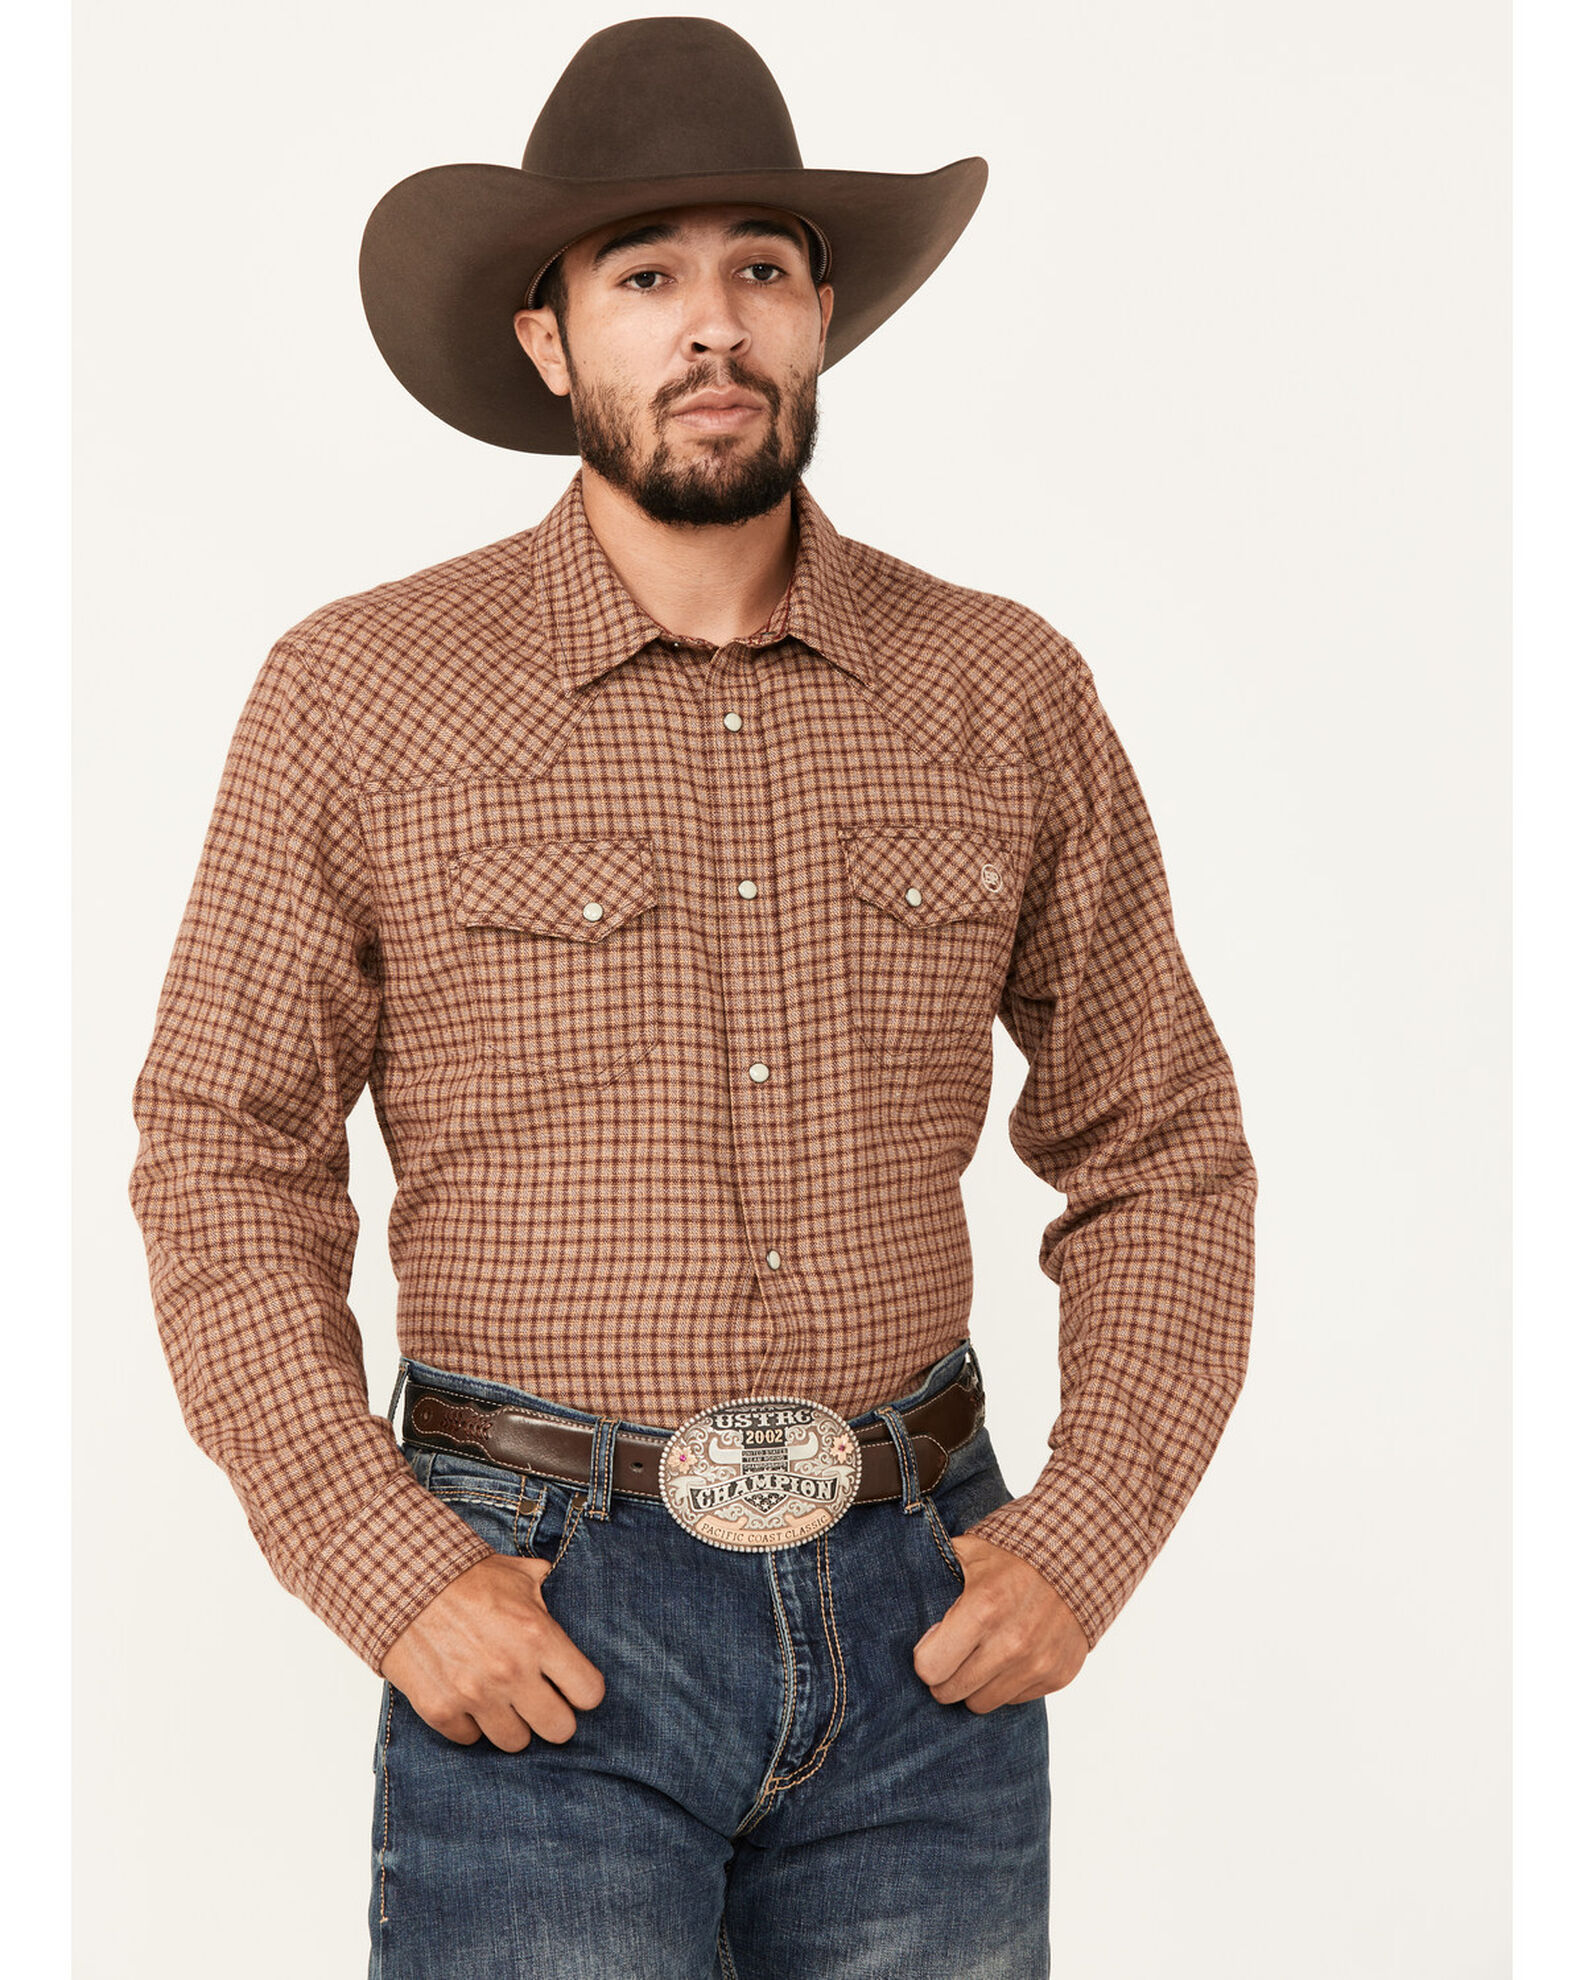 Blue Ranchwear Men's Decatur Checkered Print Long Sleeve Snap Work Shirt